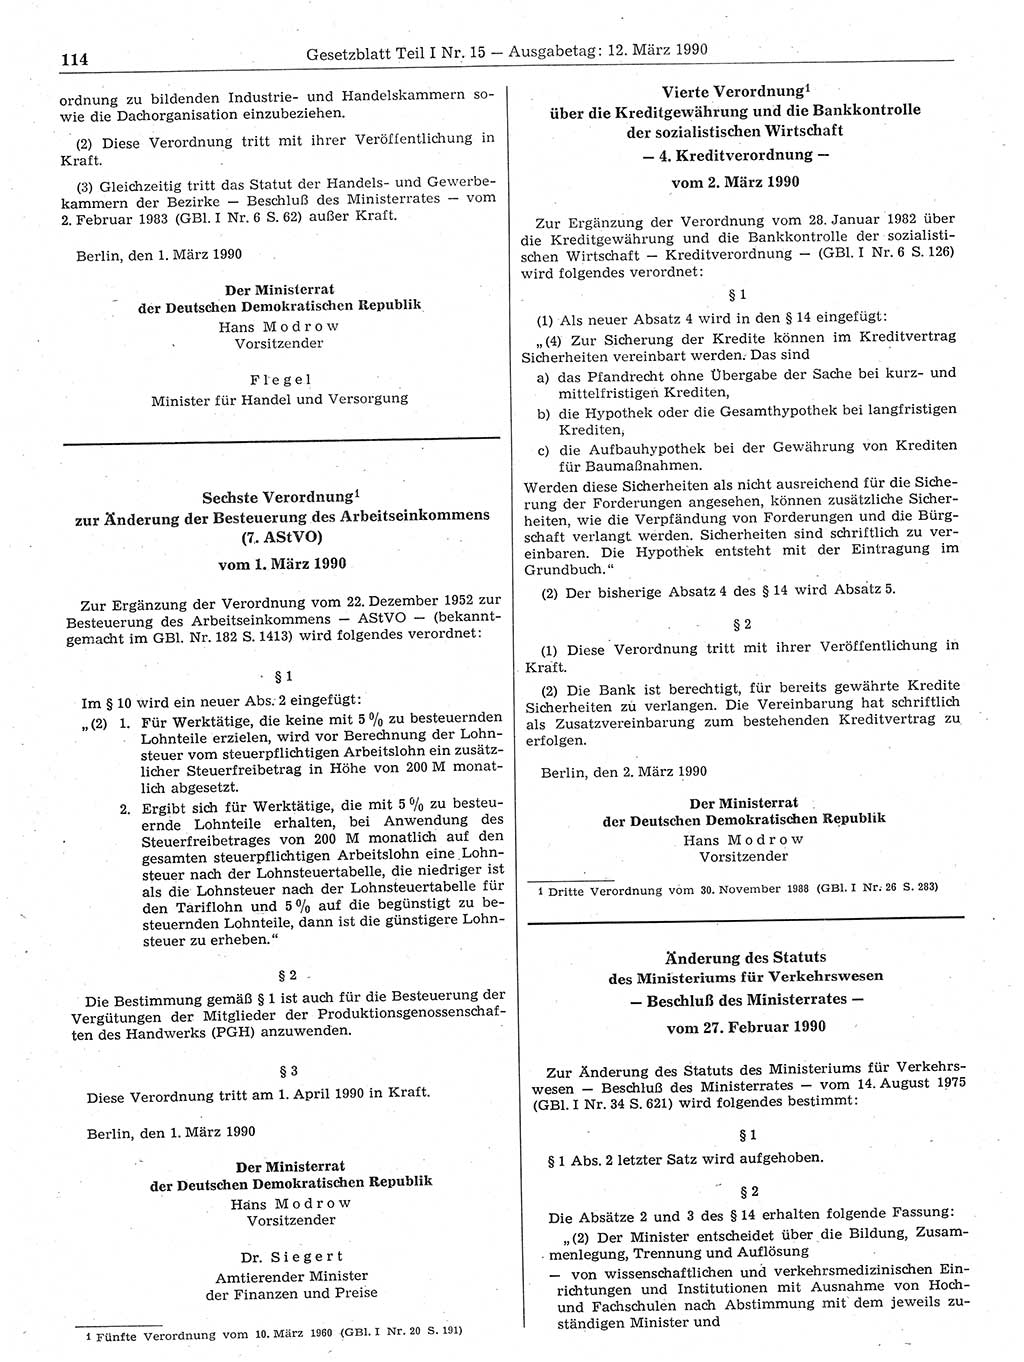 Gesetzblatt (GBl.) der Deutschen Demokratischen Republik (DDR) Teil Ⅰ 1990, Seite 114 (GBl. DDR Ⅰ 1990, S. 114)